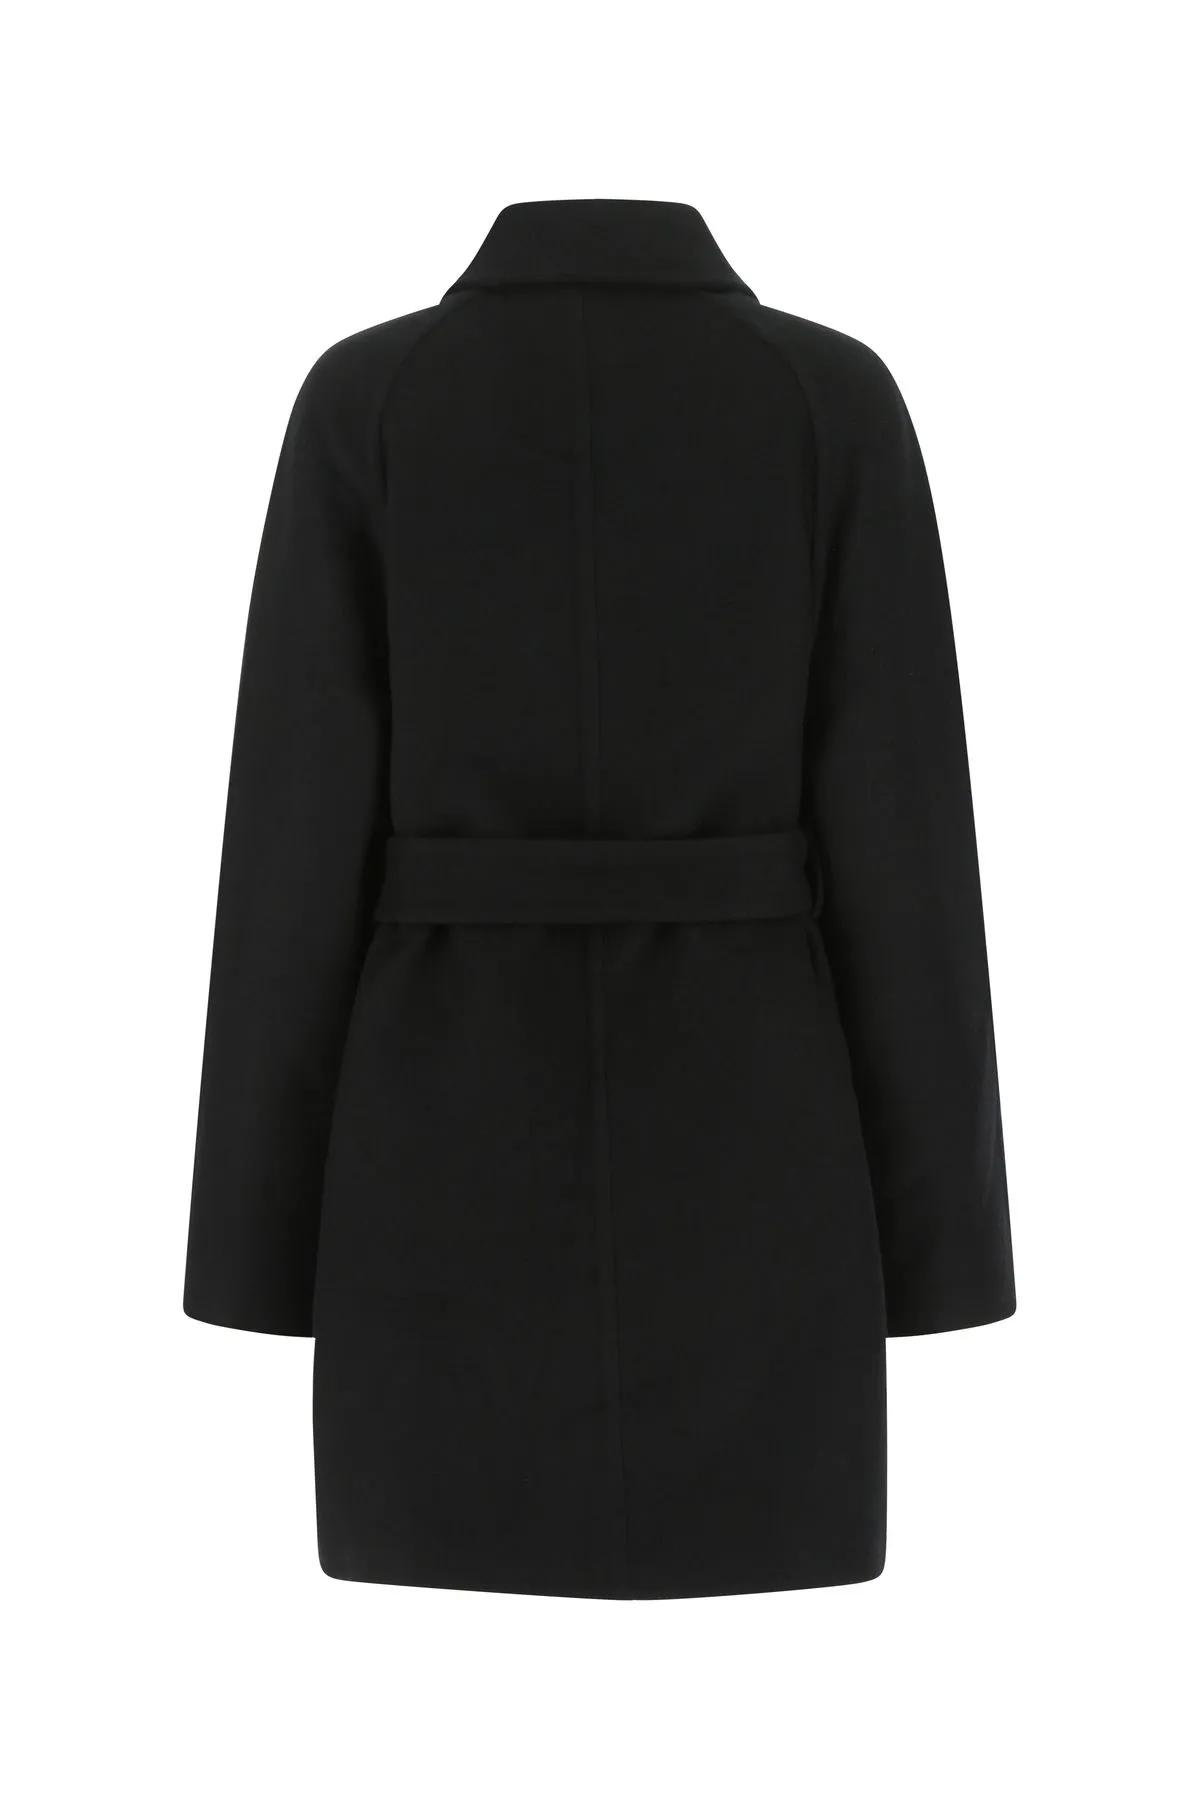 Shop Givenchy Black Wool Blend Coat